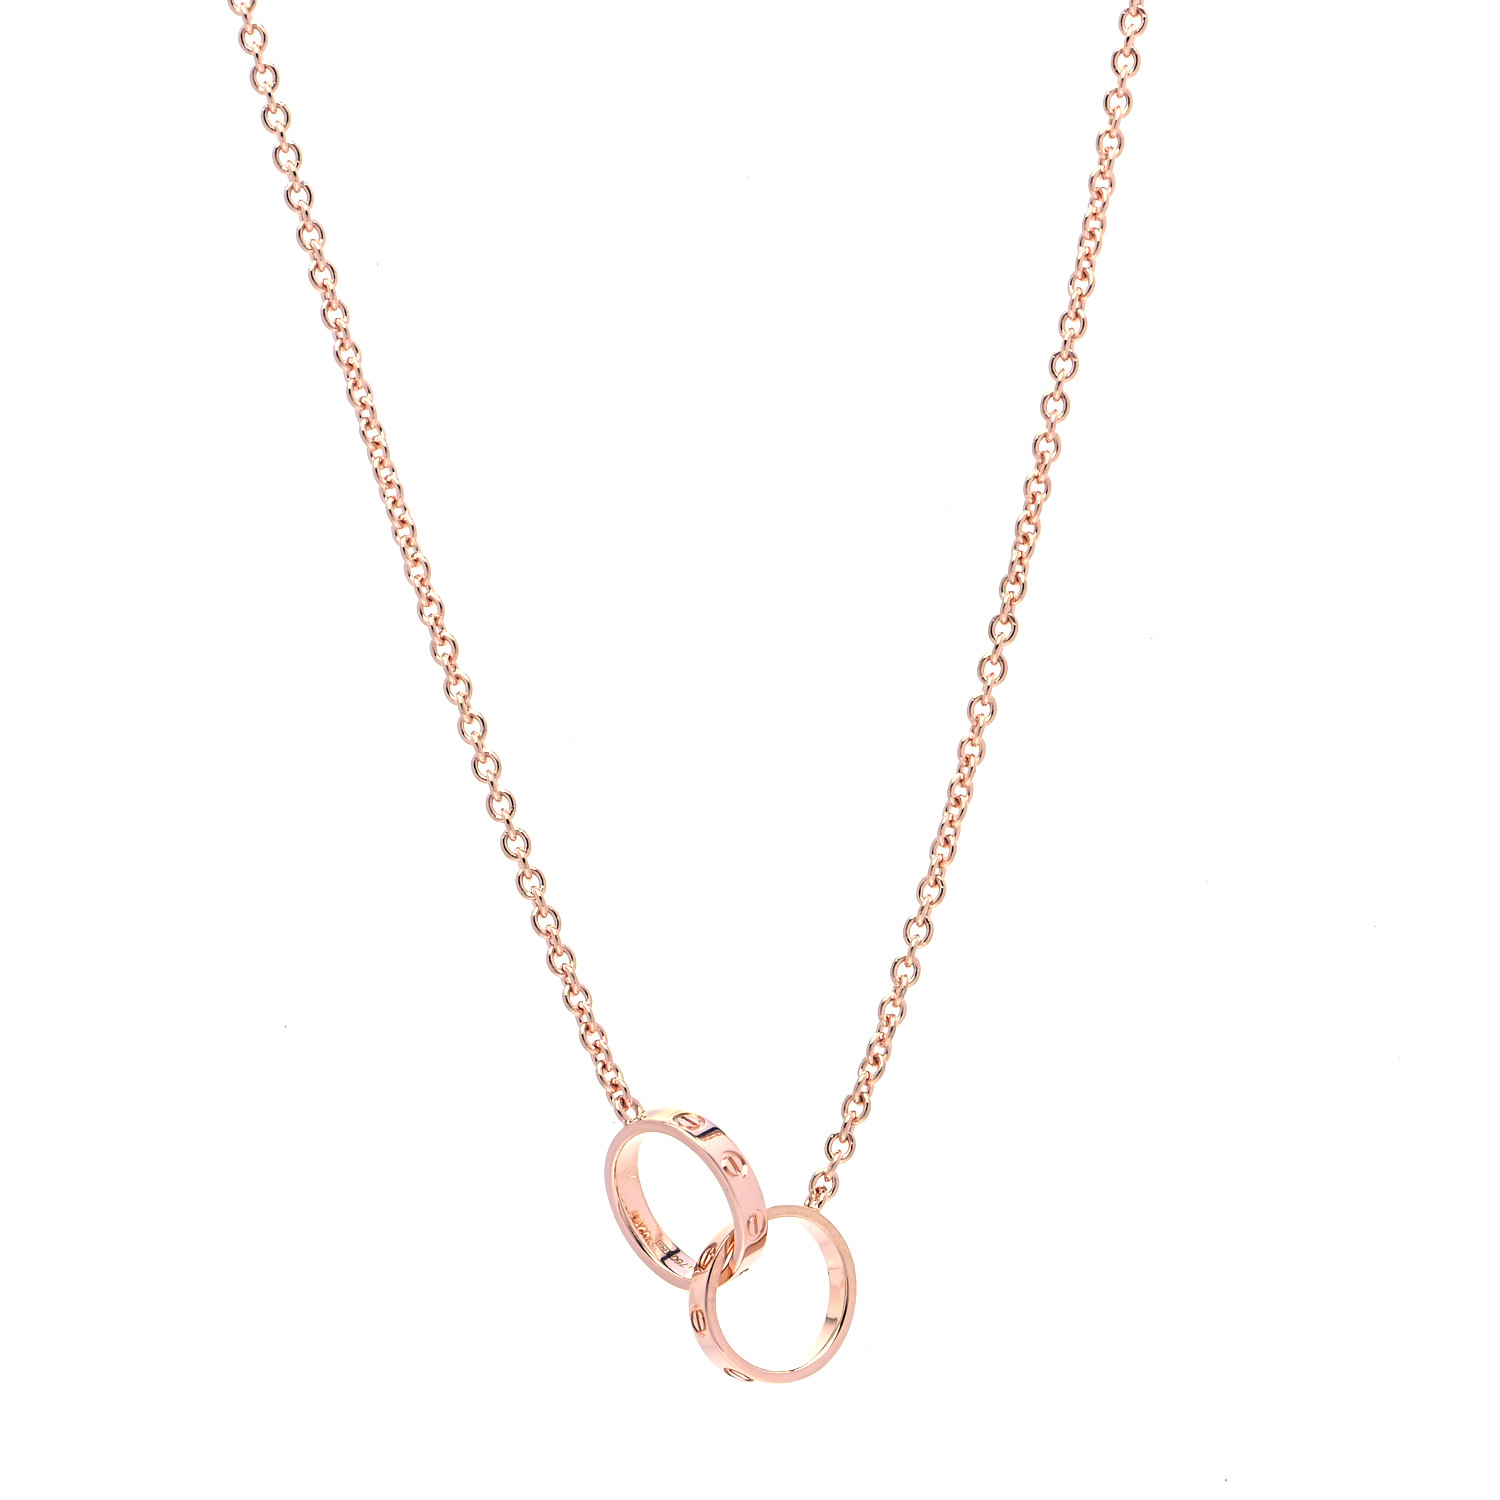 Cartier 18k Pink Gold Interlocking Love Necklace 4275 Fashionphile